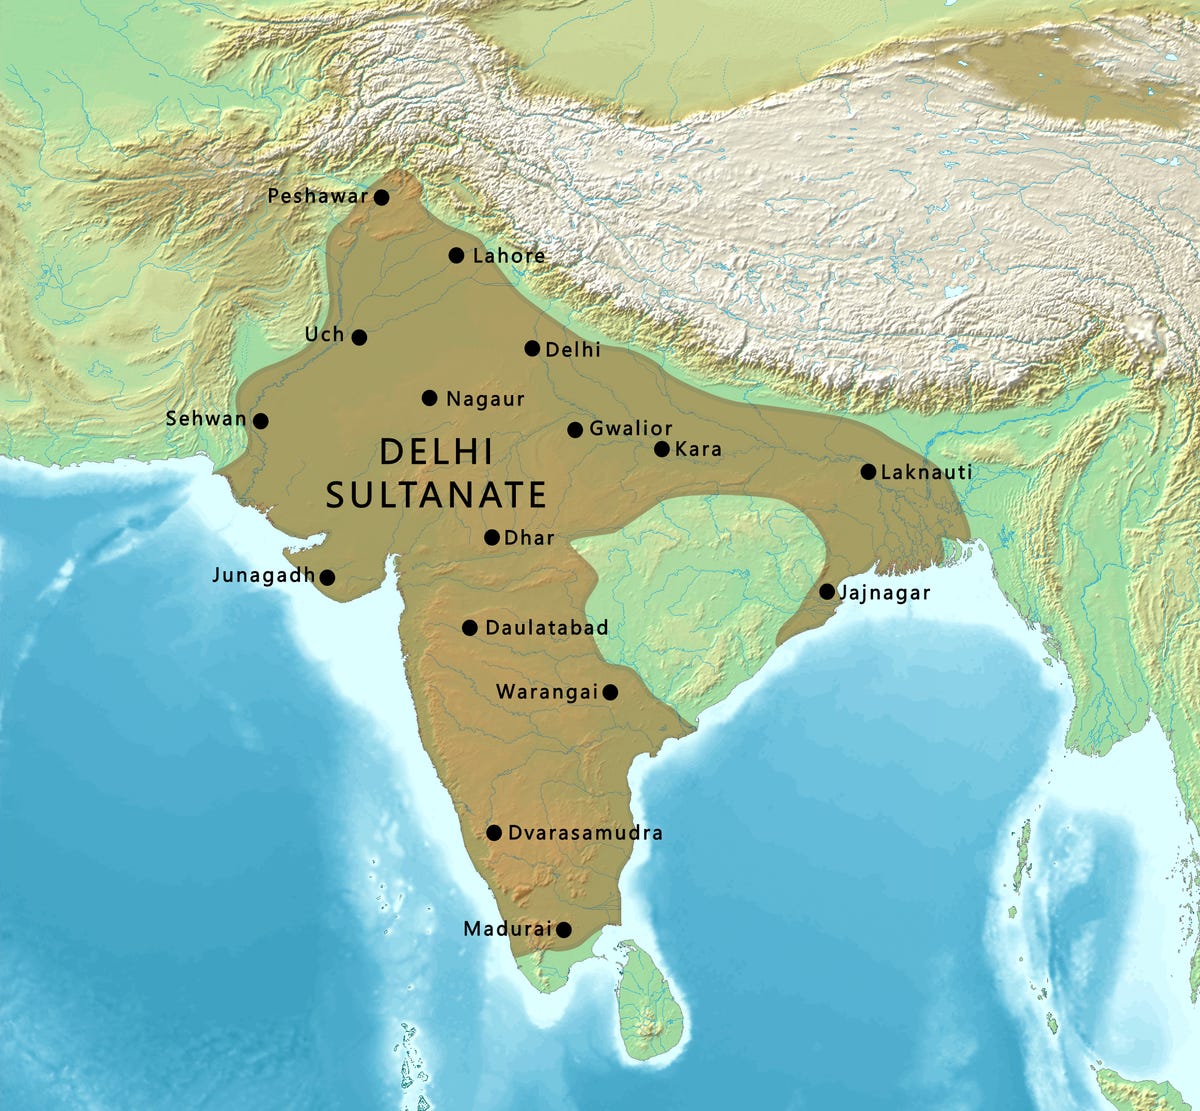 Delhi Sultanate - Wikipedia